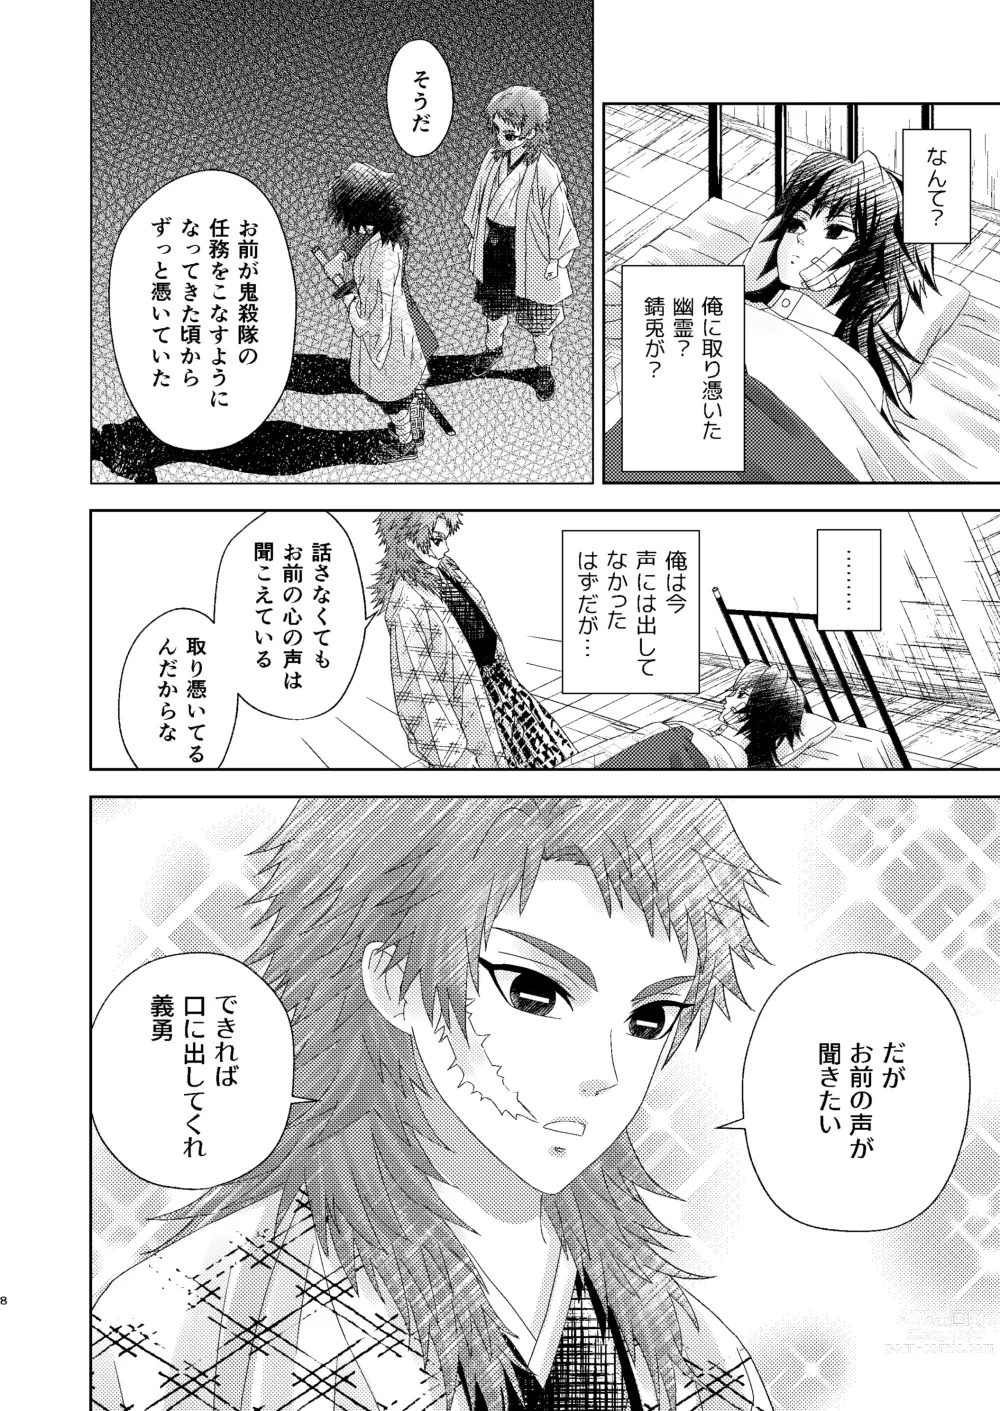 Page 7 of doujinshi Yuurei Kareshi no Koiwazurai